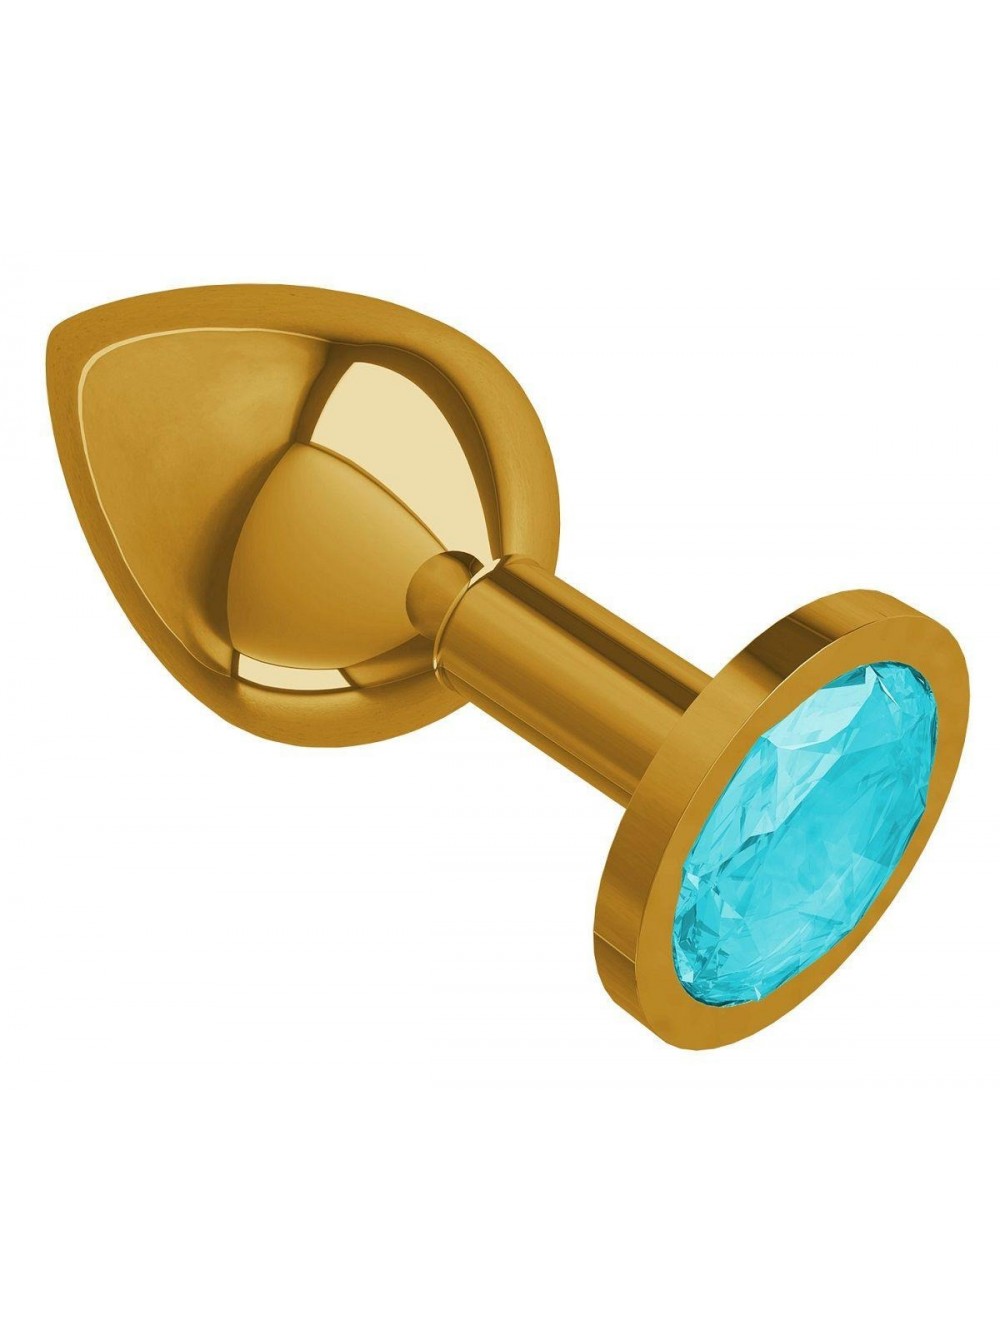 купить Втулка Золото средняя (круглая) с голубым кристаллом в интернет-магазине интим товаров «Штучки»